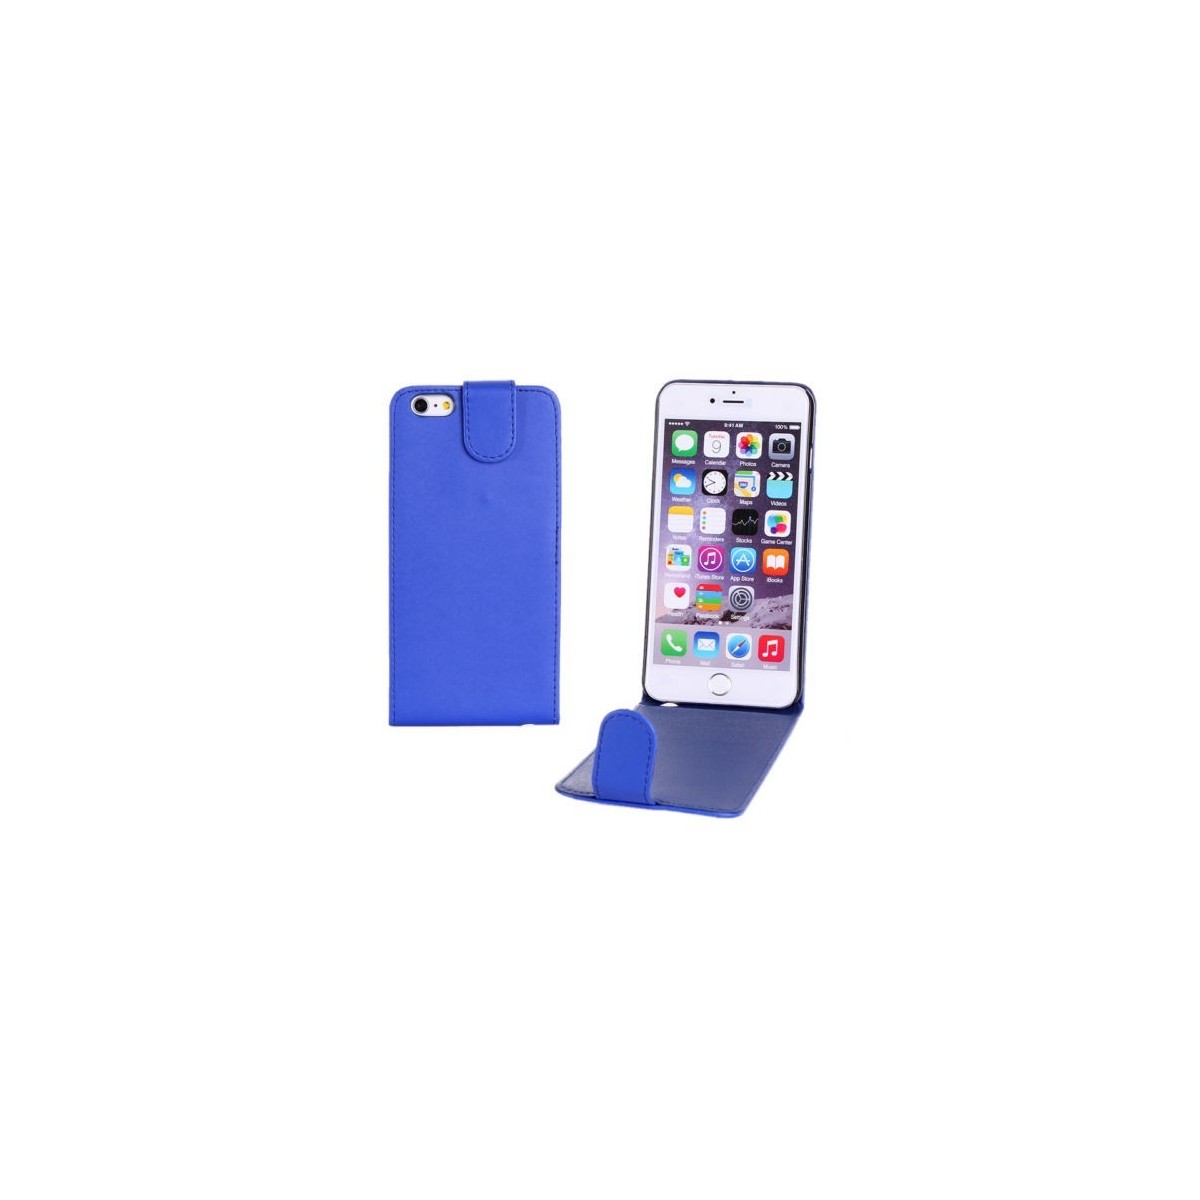 Étui à Clapet Vertical pour iPhone 6/6S Plus Bleu